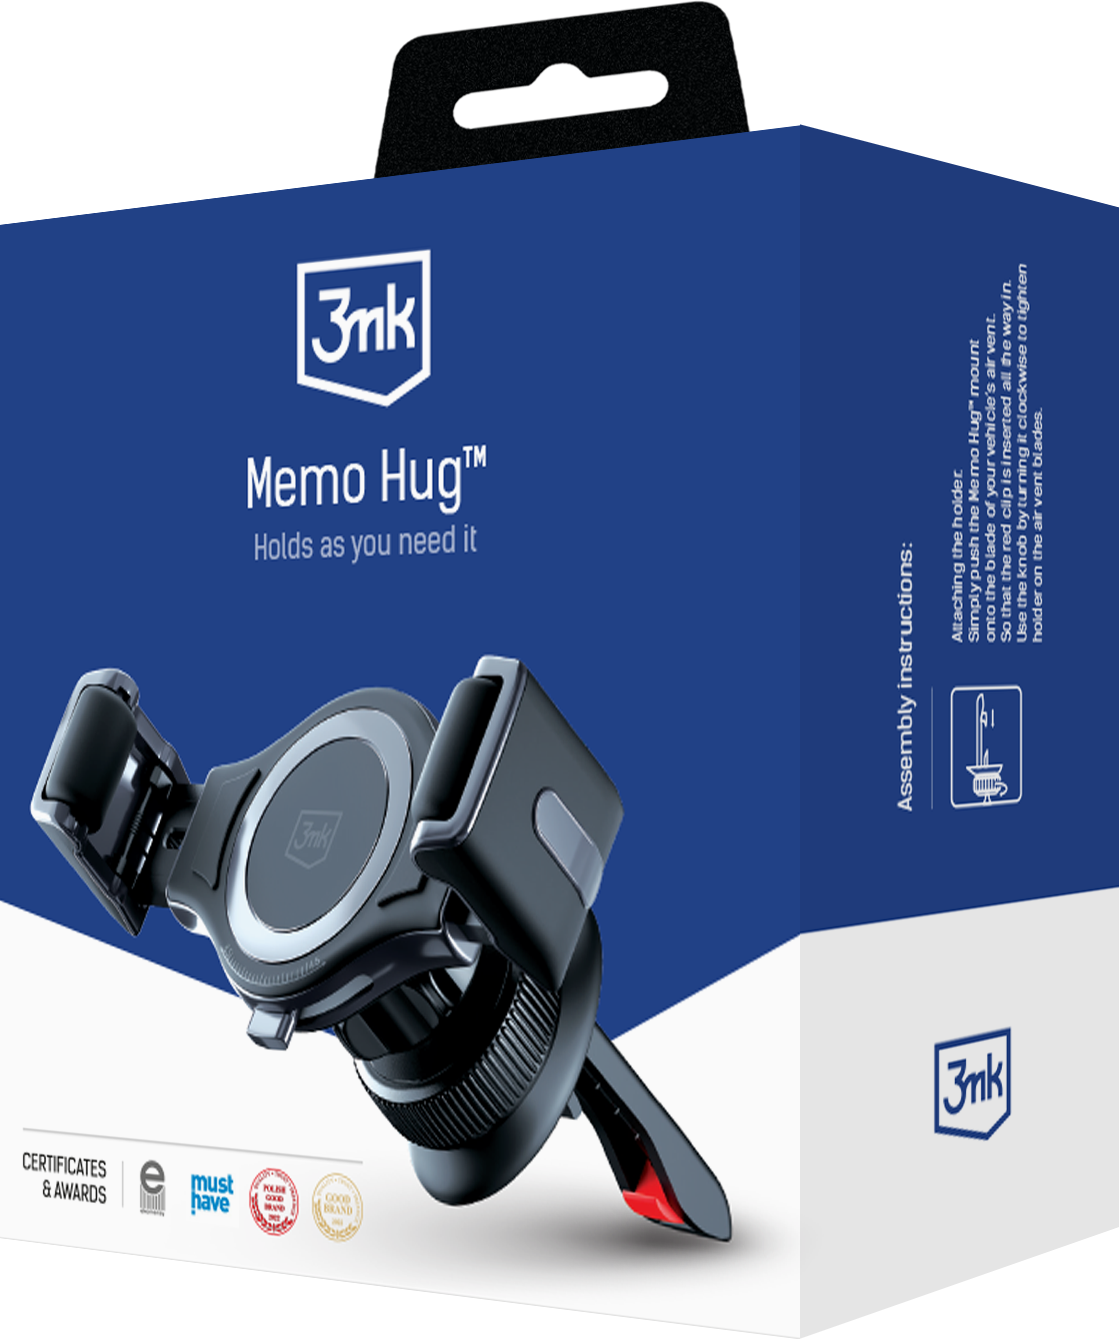 3mk-memo-hug_-packshot-v2